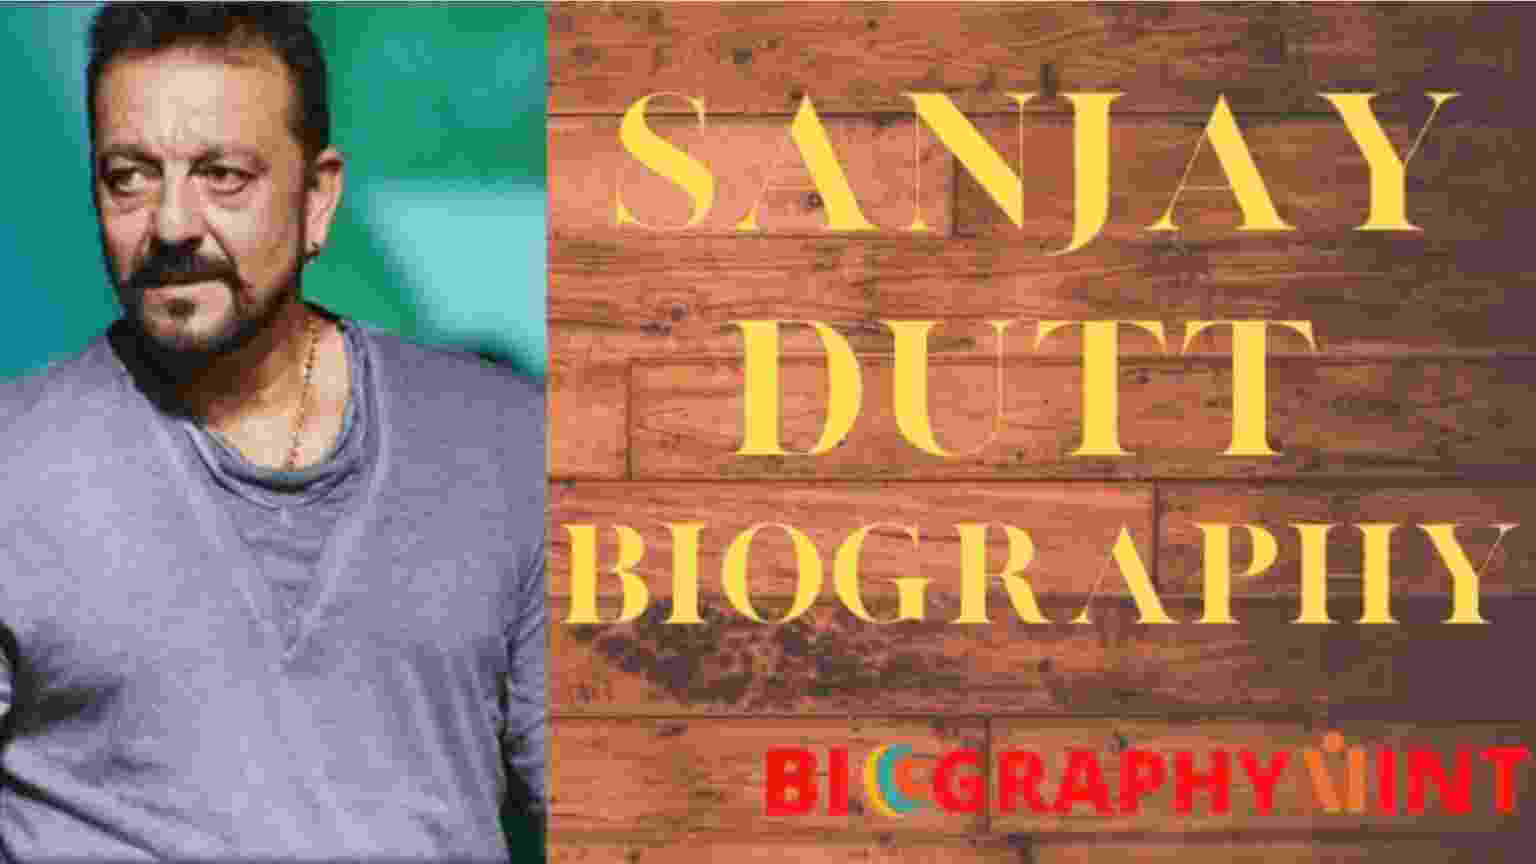 biography book of sanjay dutt